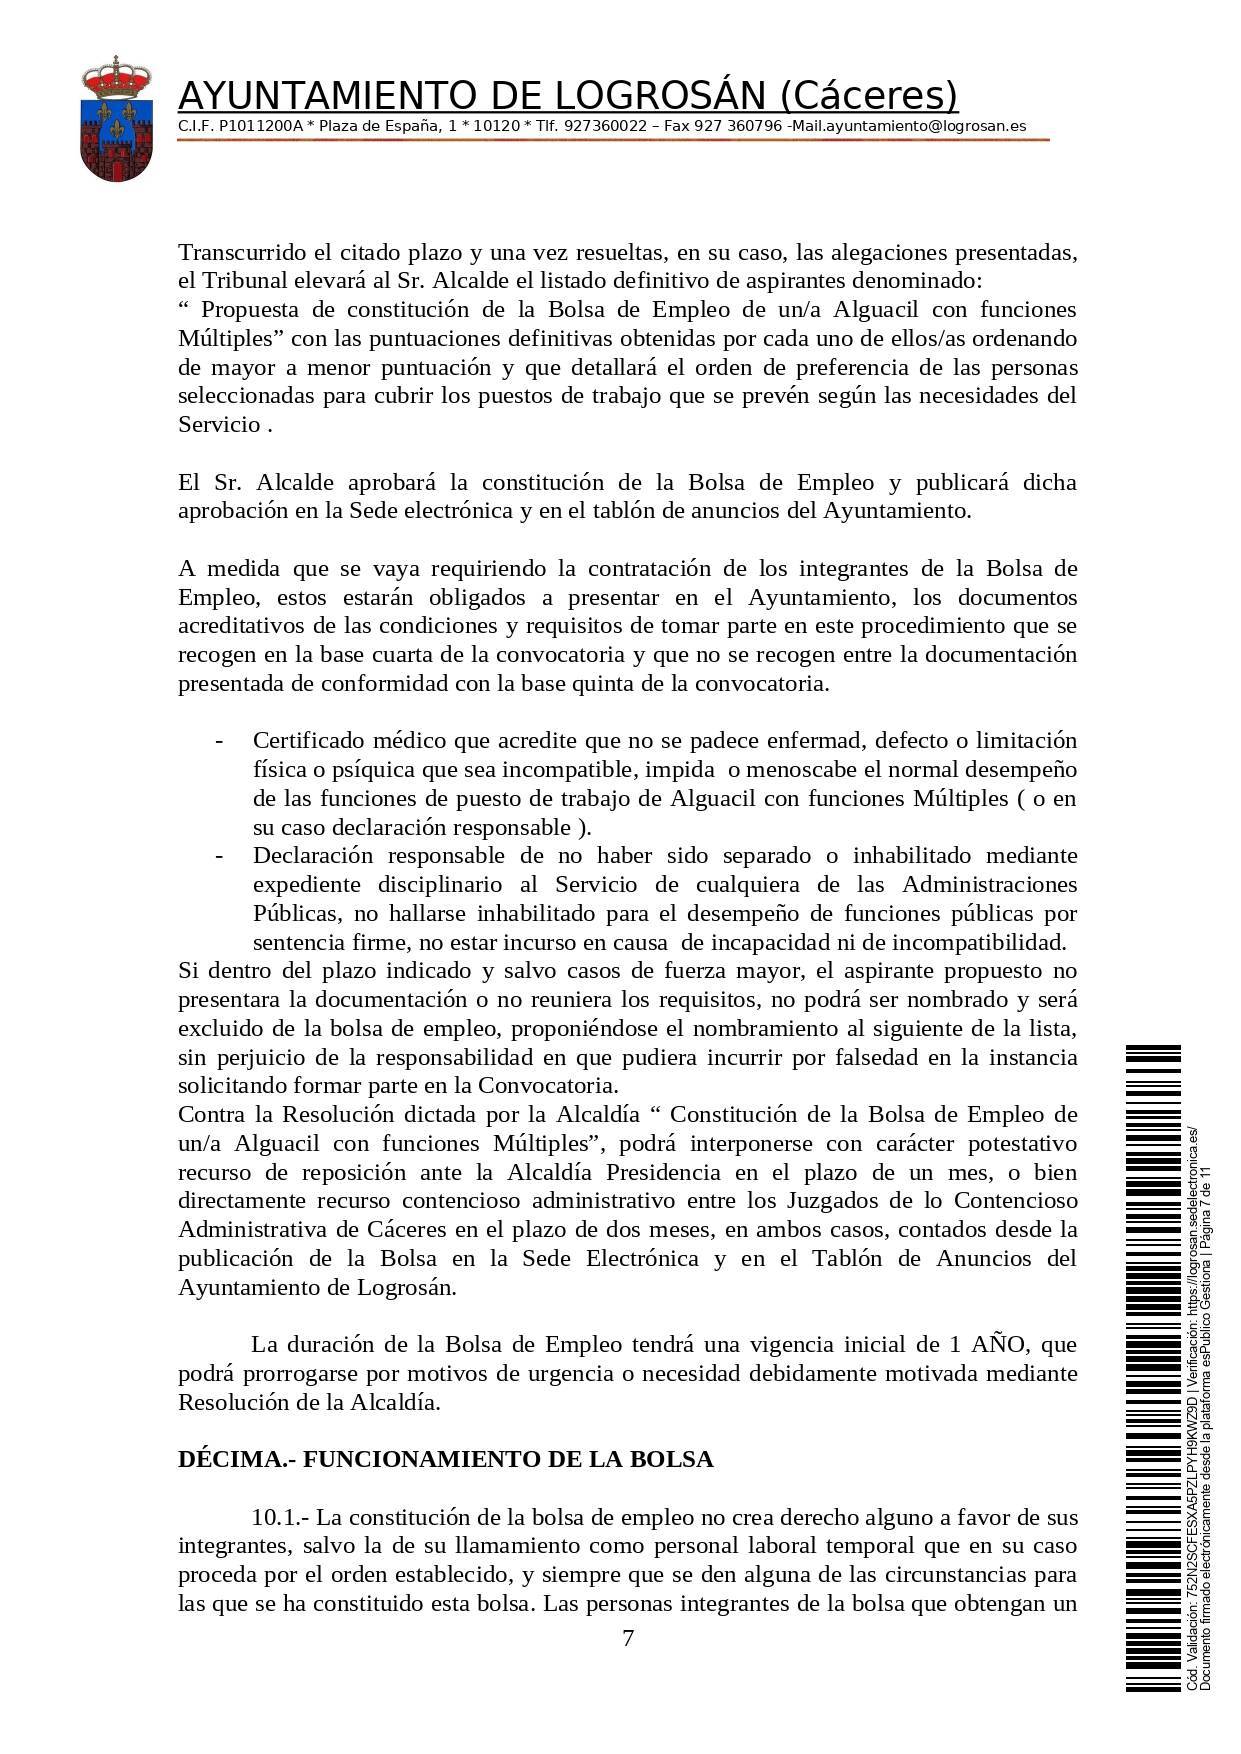 Bolsa de una alguacil (2021) - Logrosán (Cáceres) 7